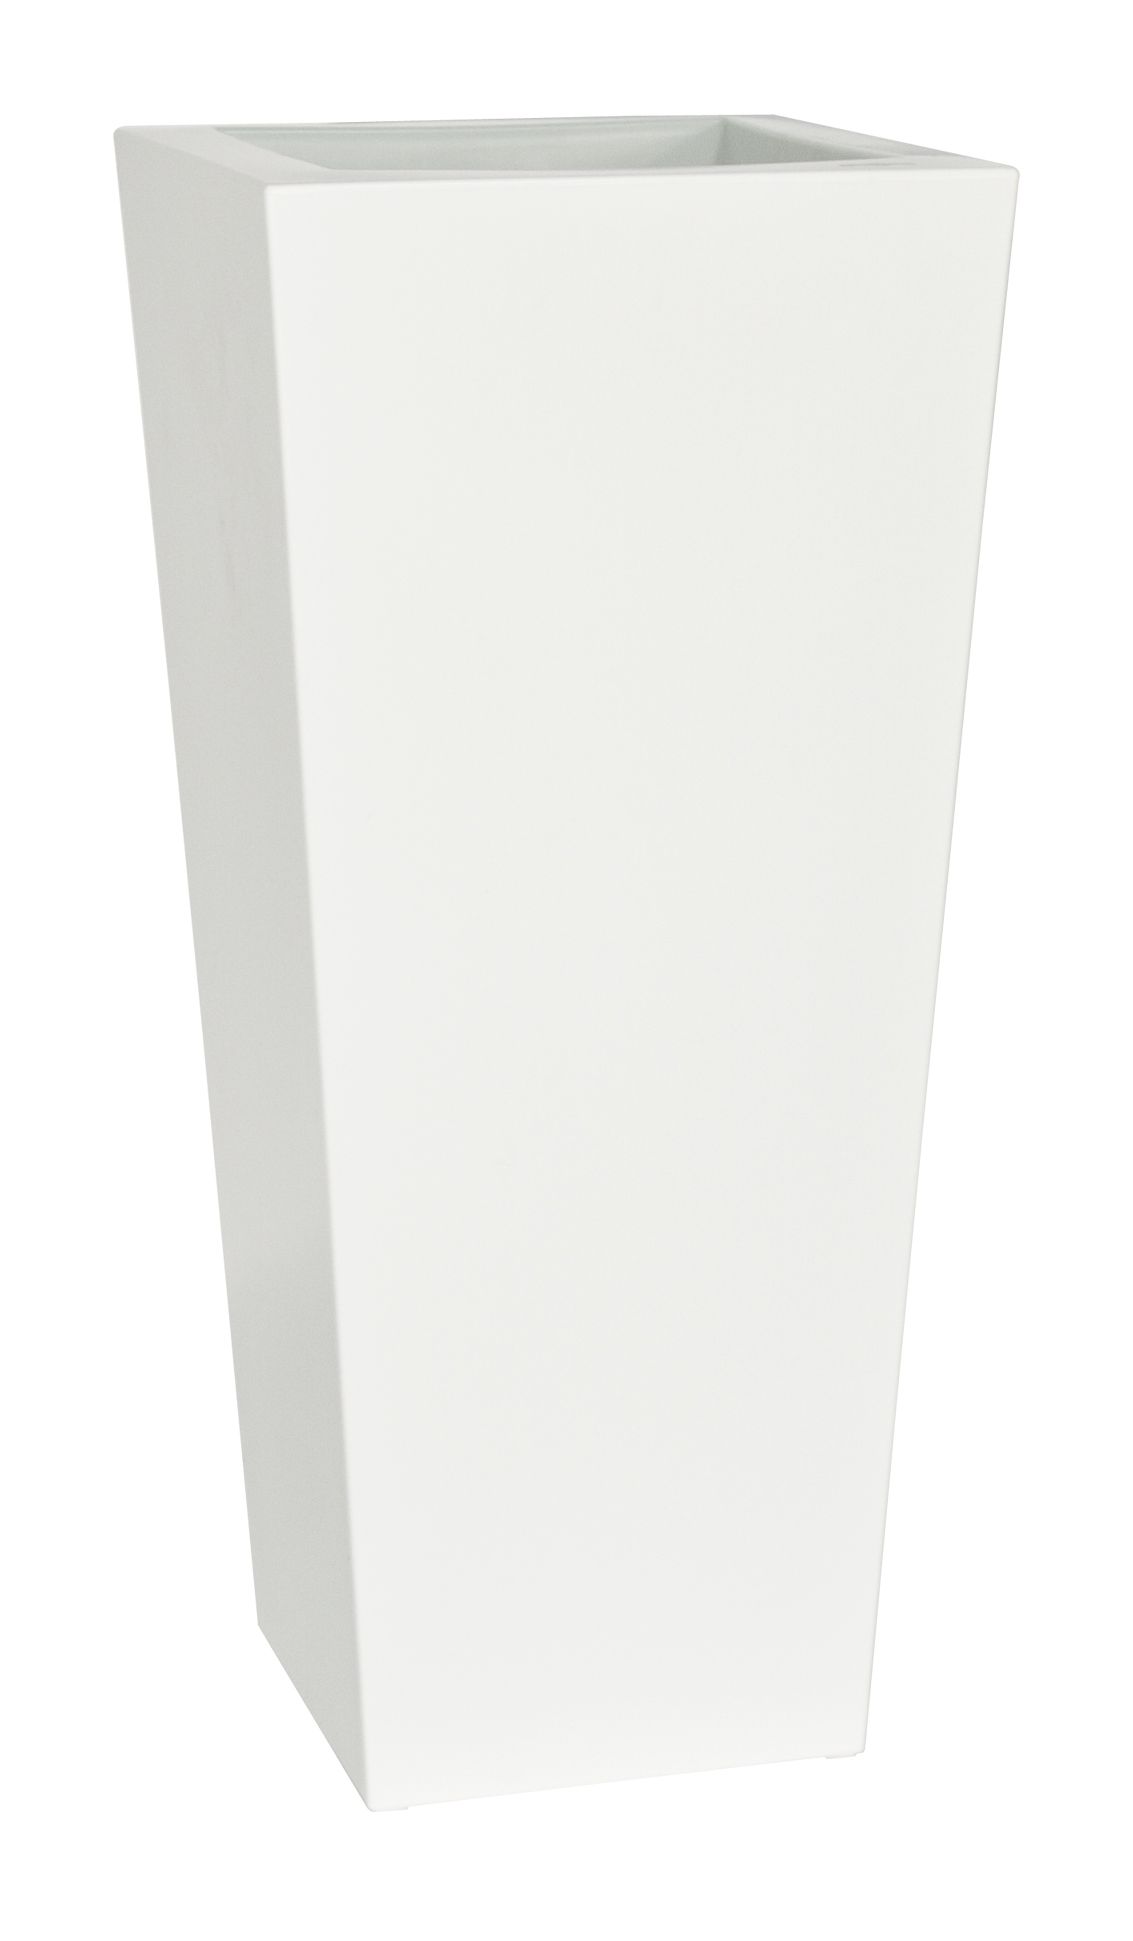 Plust - Dizajnový kvetináč KIAM lesklý, 35 x 35 cm - biely